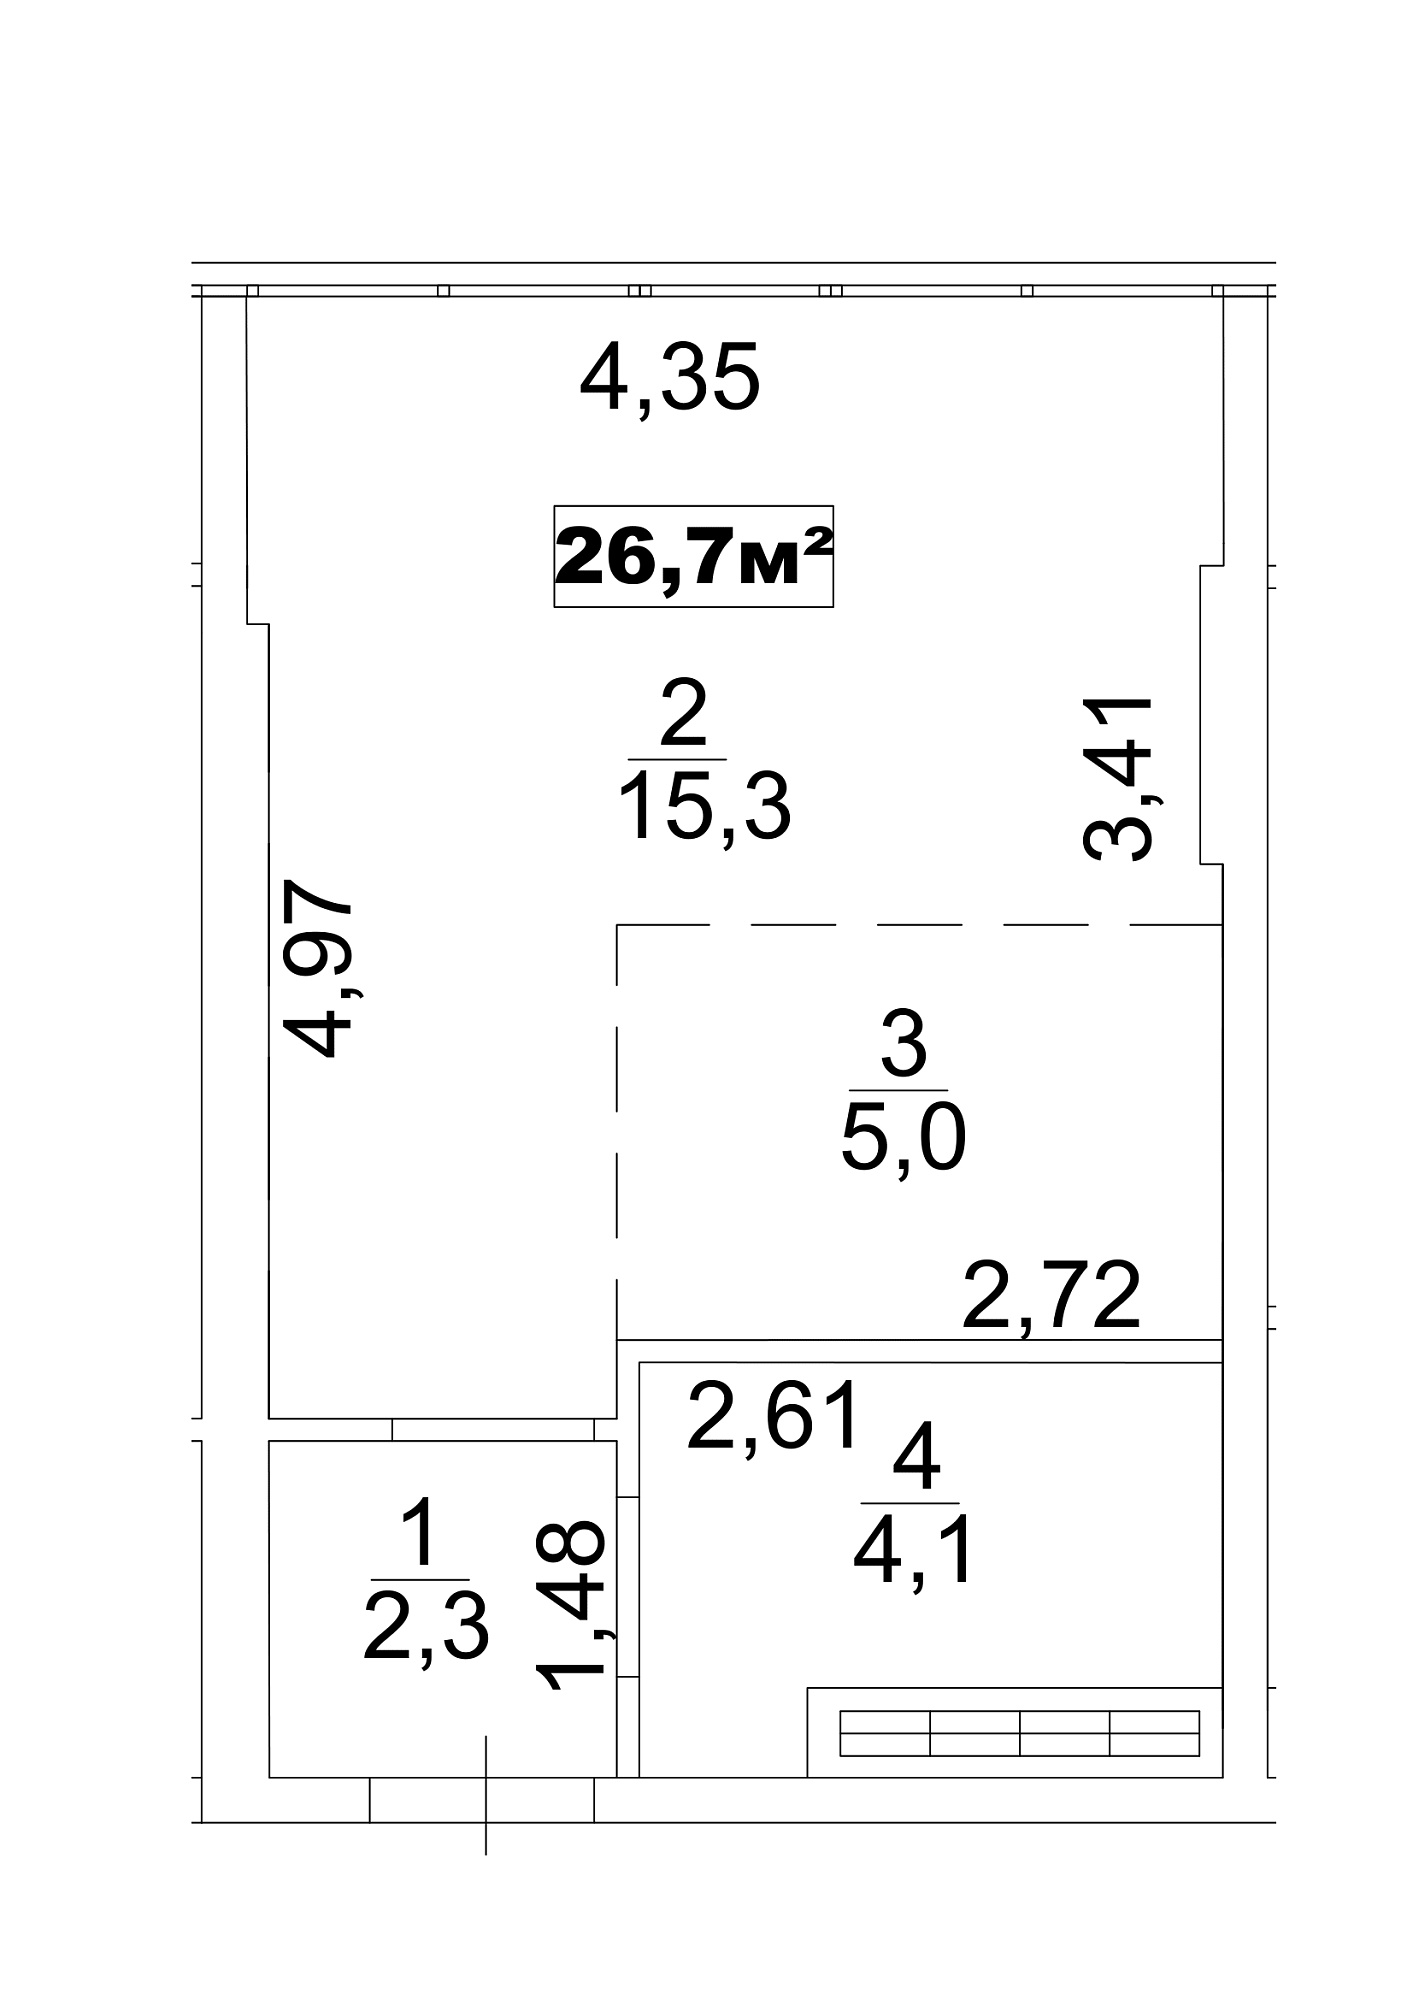 Планування Smart-квартира площею 26.7м2, AB-13-08/0063в.